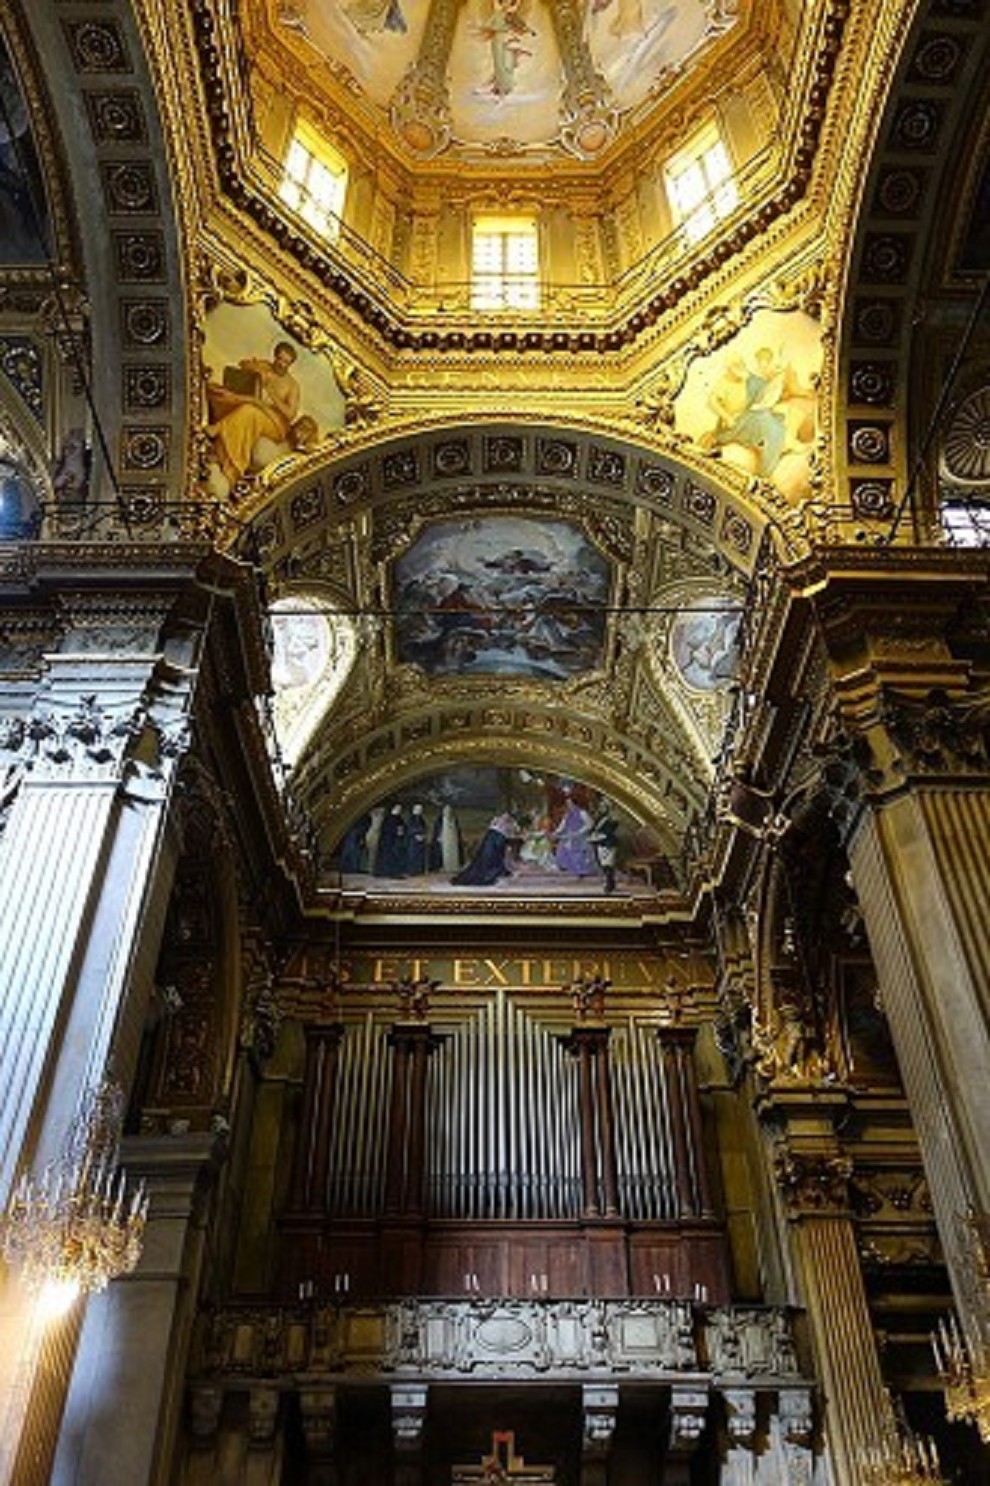 Visione del prospetto di facciata, lato Grand'Organo.